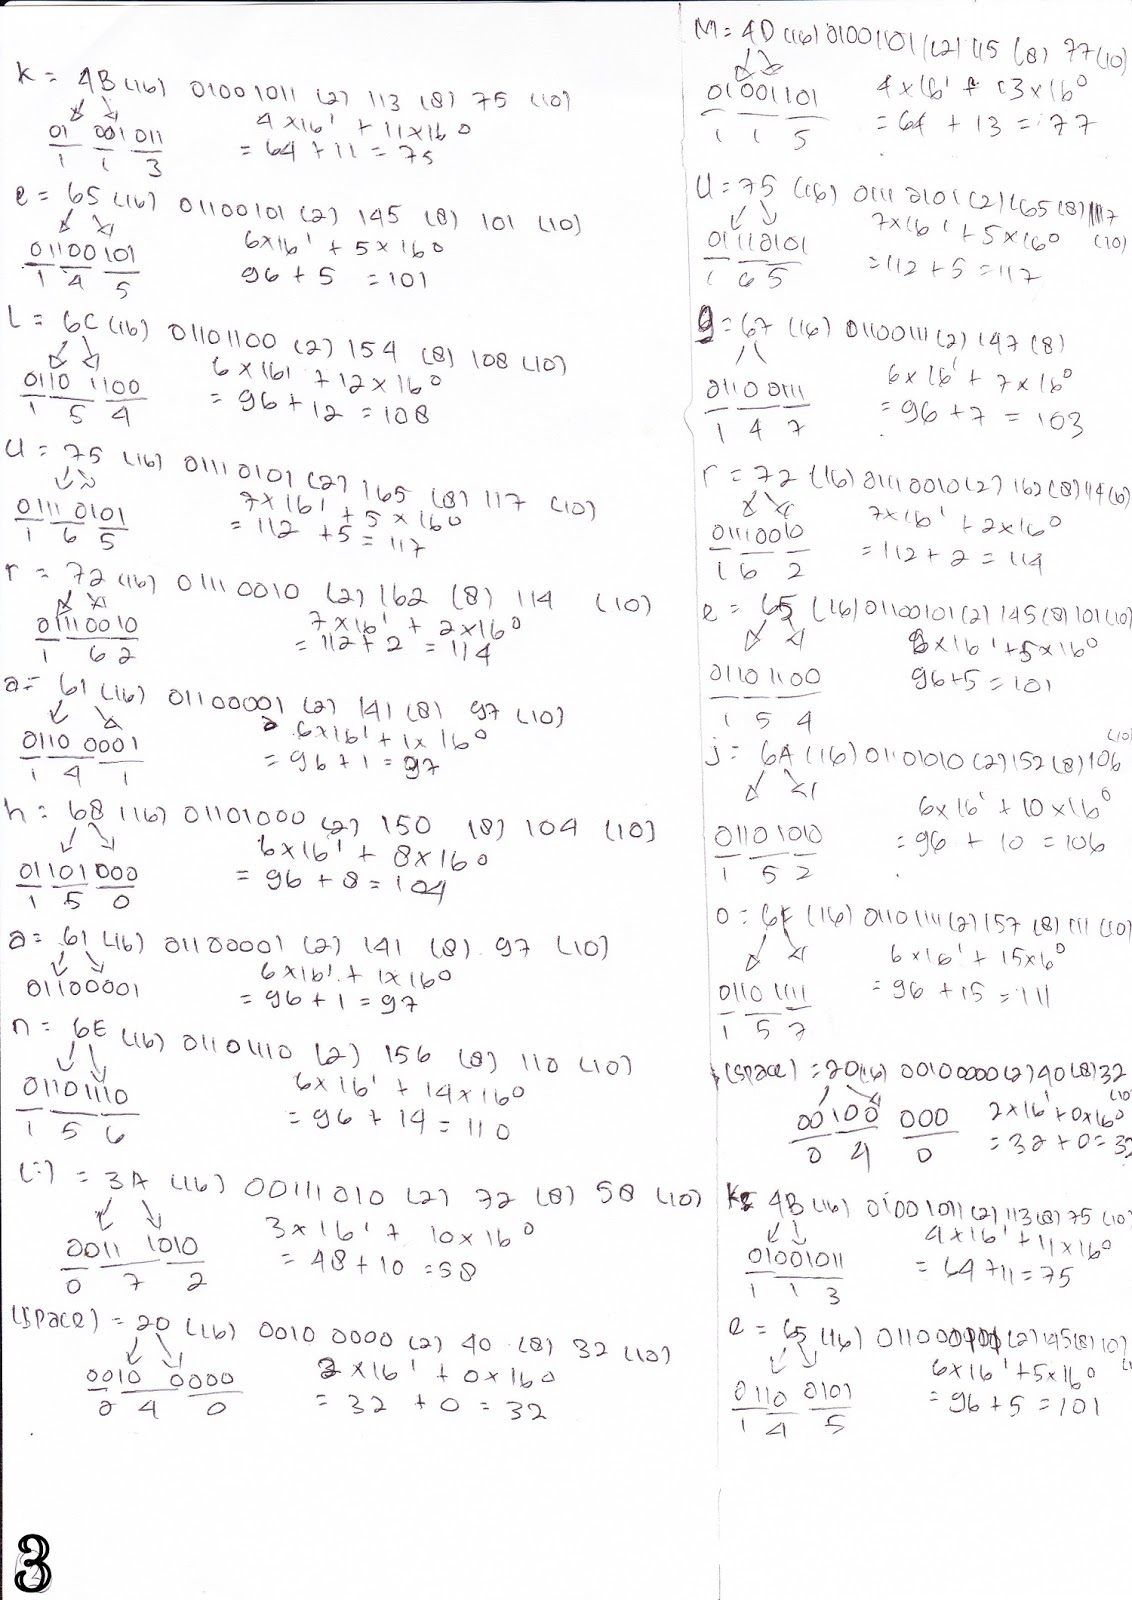 Koversi Bilangan ASCII ~ SunZoku Magic